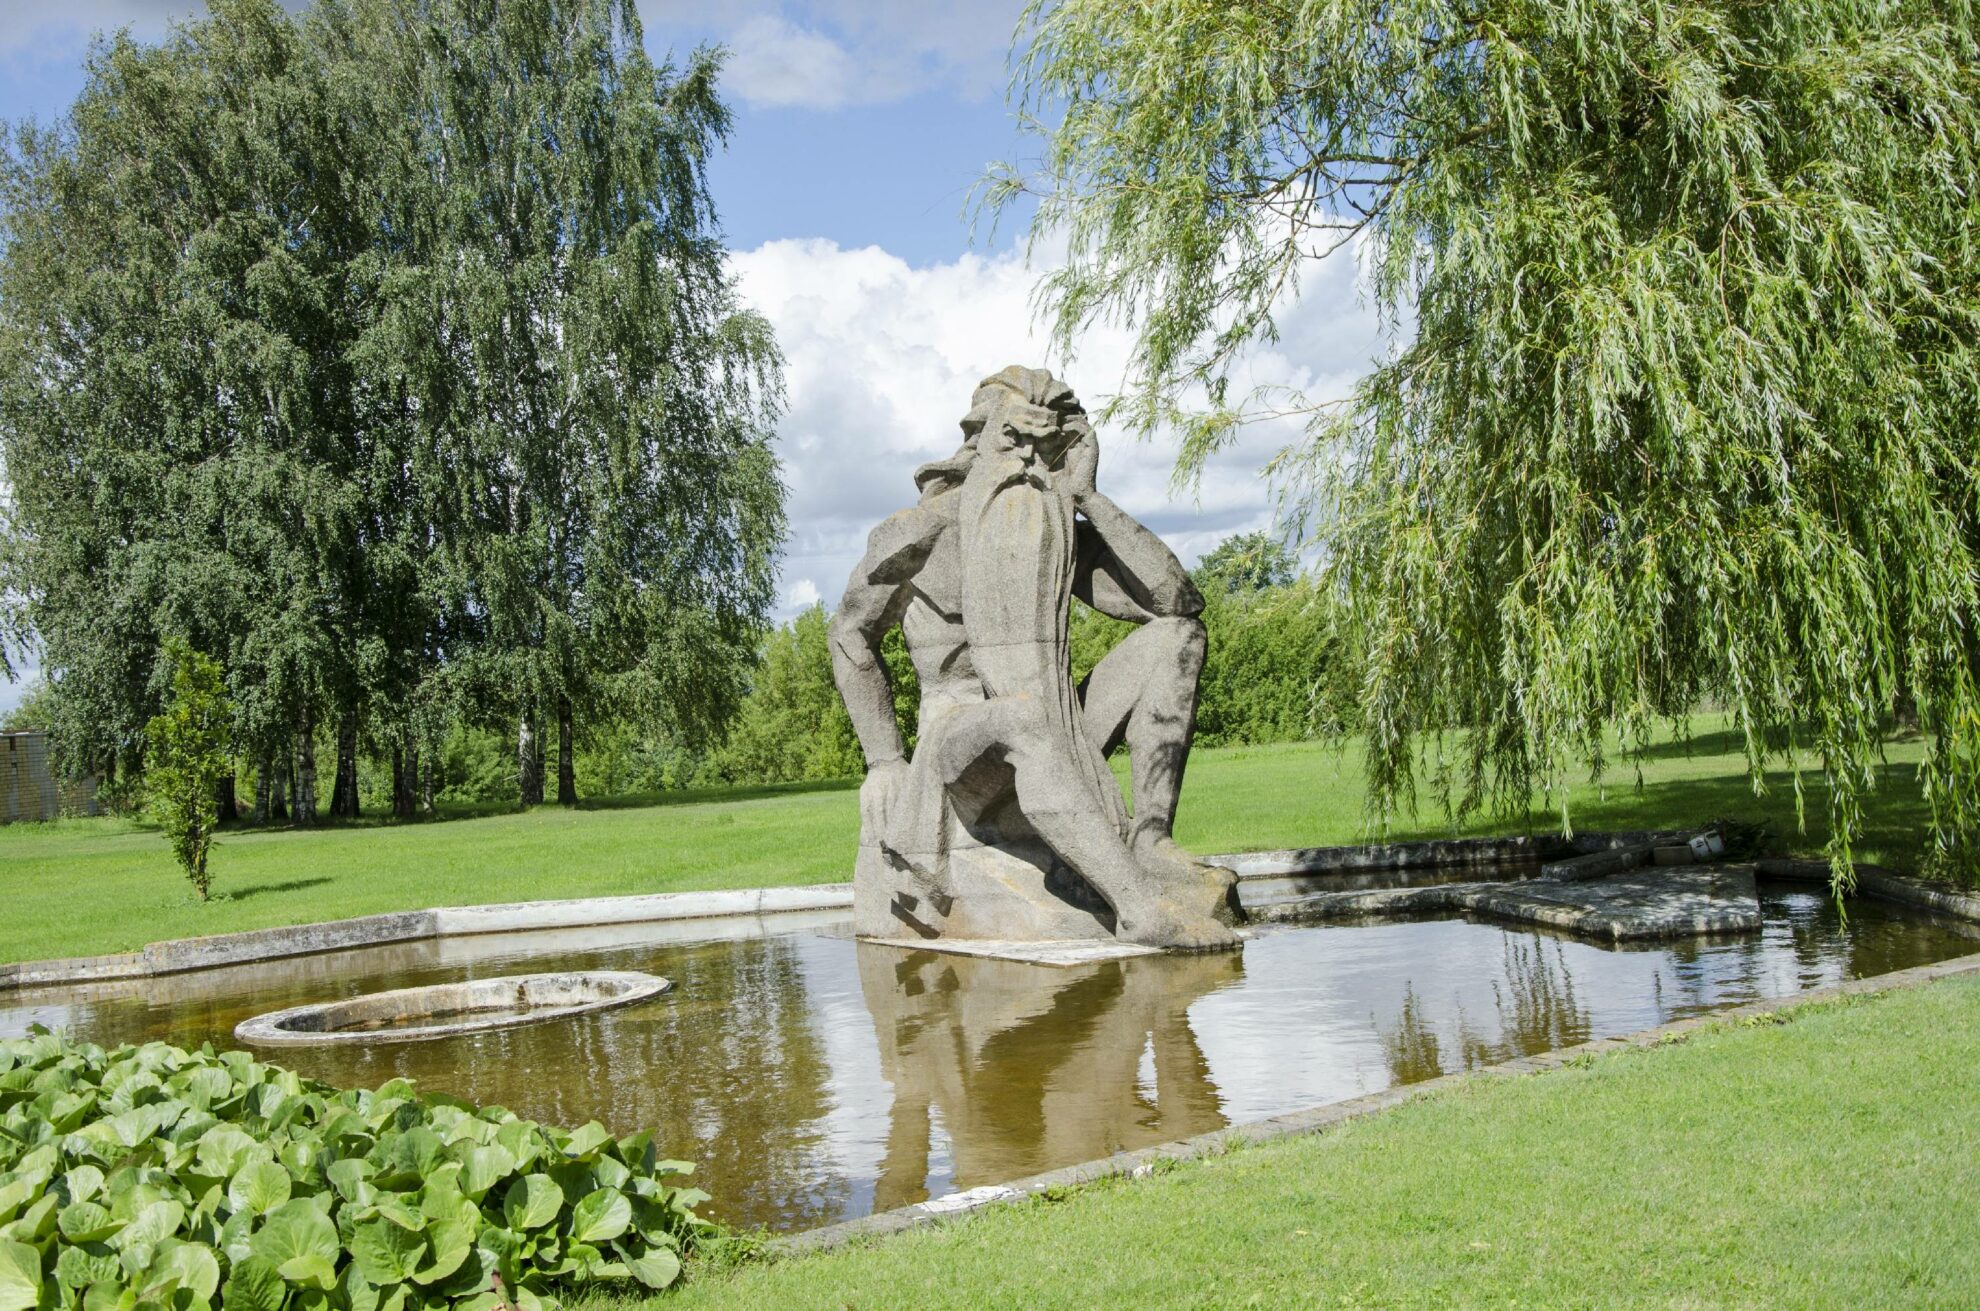 Miestui vardą davusios upės garbei žymus skulptorius Bernardas Bučas kūrė skulptūrą „Nevėžis“, turėjusią stovėti prie tuometės Draugystės alėjos. Pasikeitus aplinkybėms, įspūdingas kūrinys, turėjęs puošti Panevėžį, jau ne vieną dešimtmetį stūkso už jo ribų.